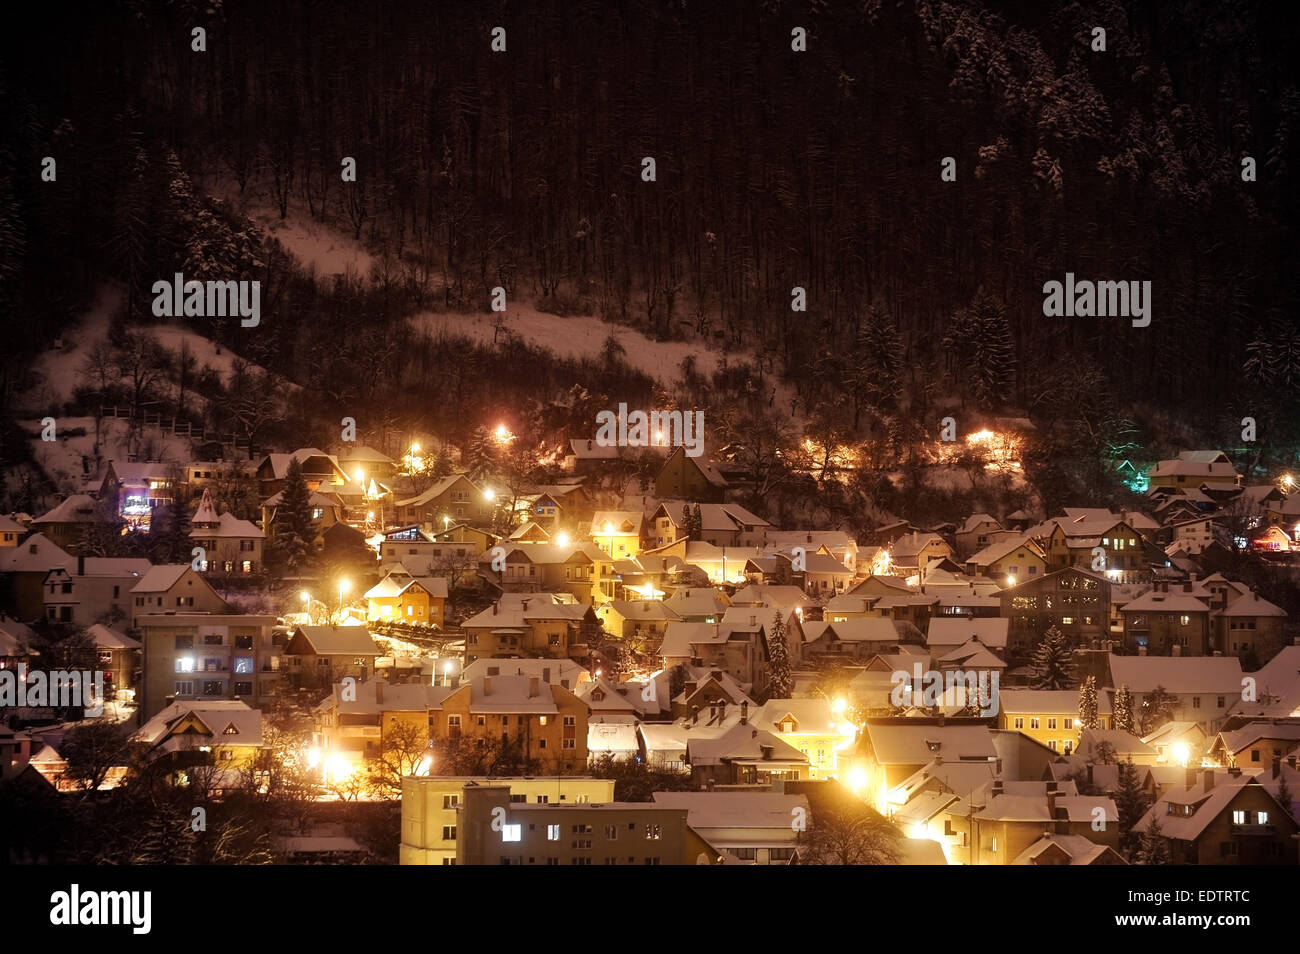 Schöne Winter-Nacht-Szene mit alten Häusern im Schnee in der Nähe von einem Wald bedeckt Stockfoto